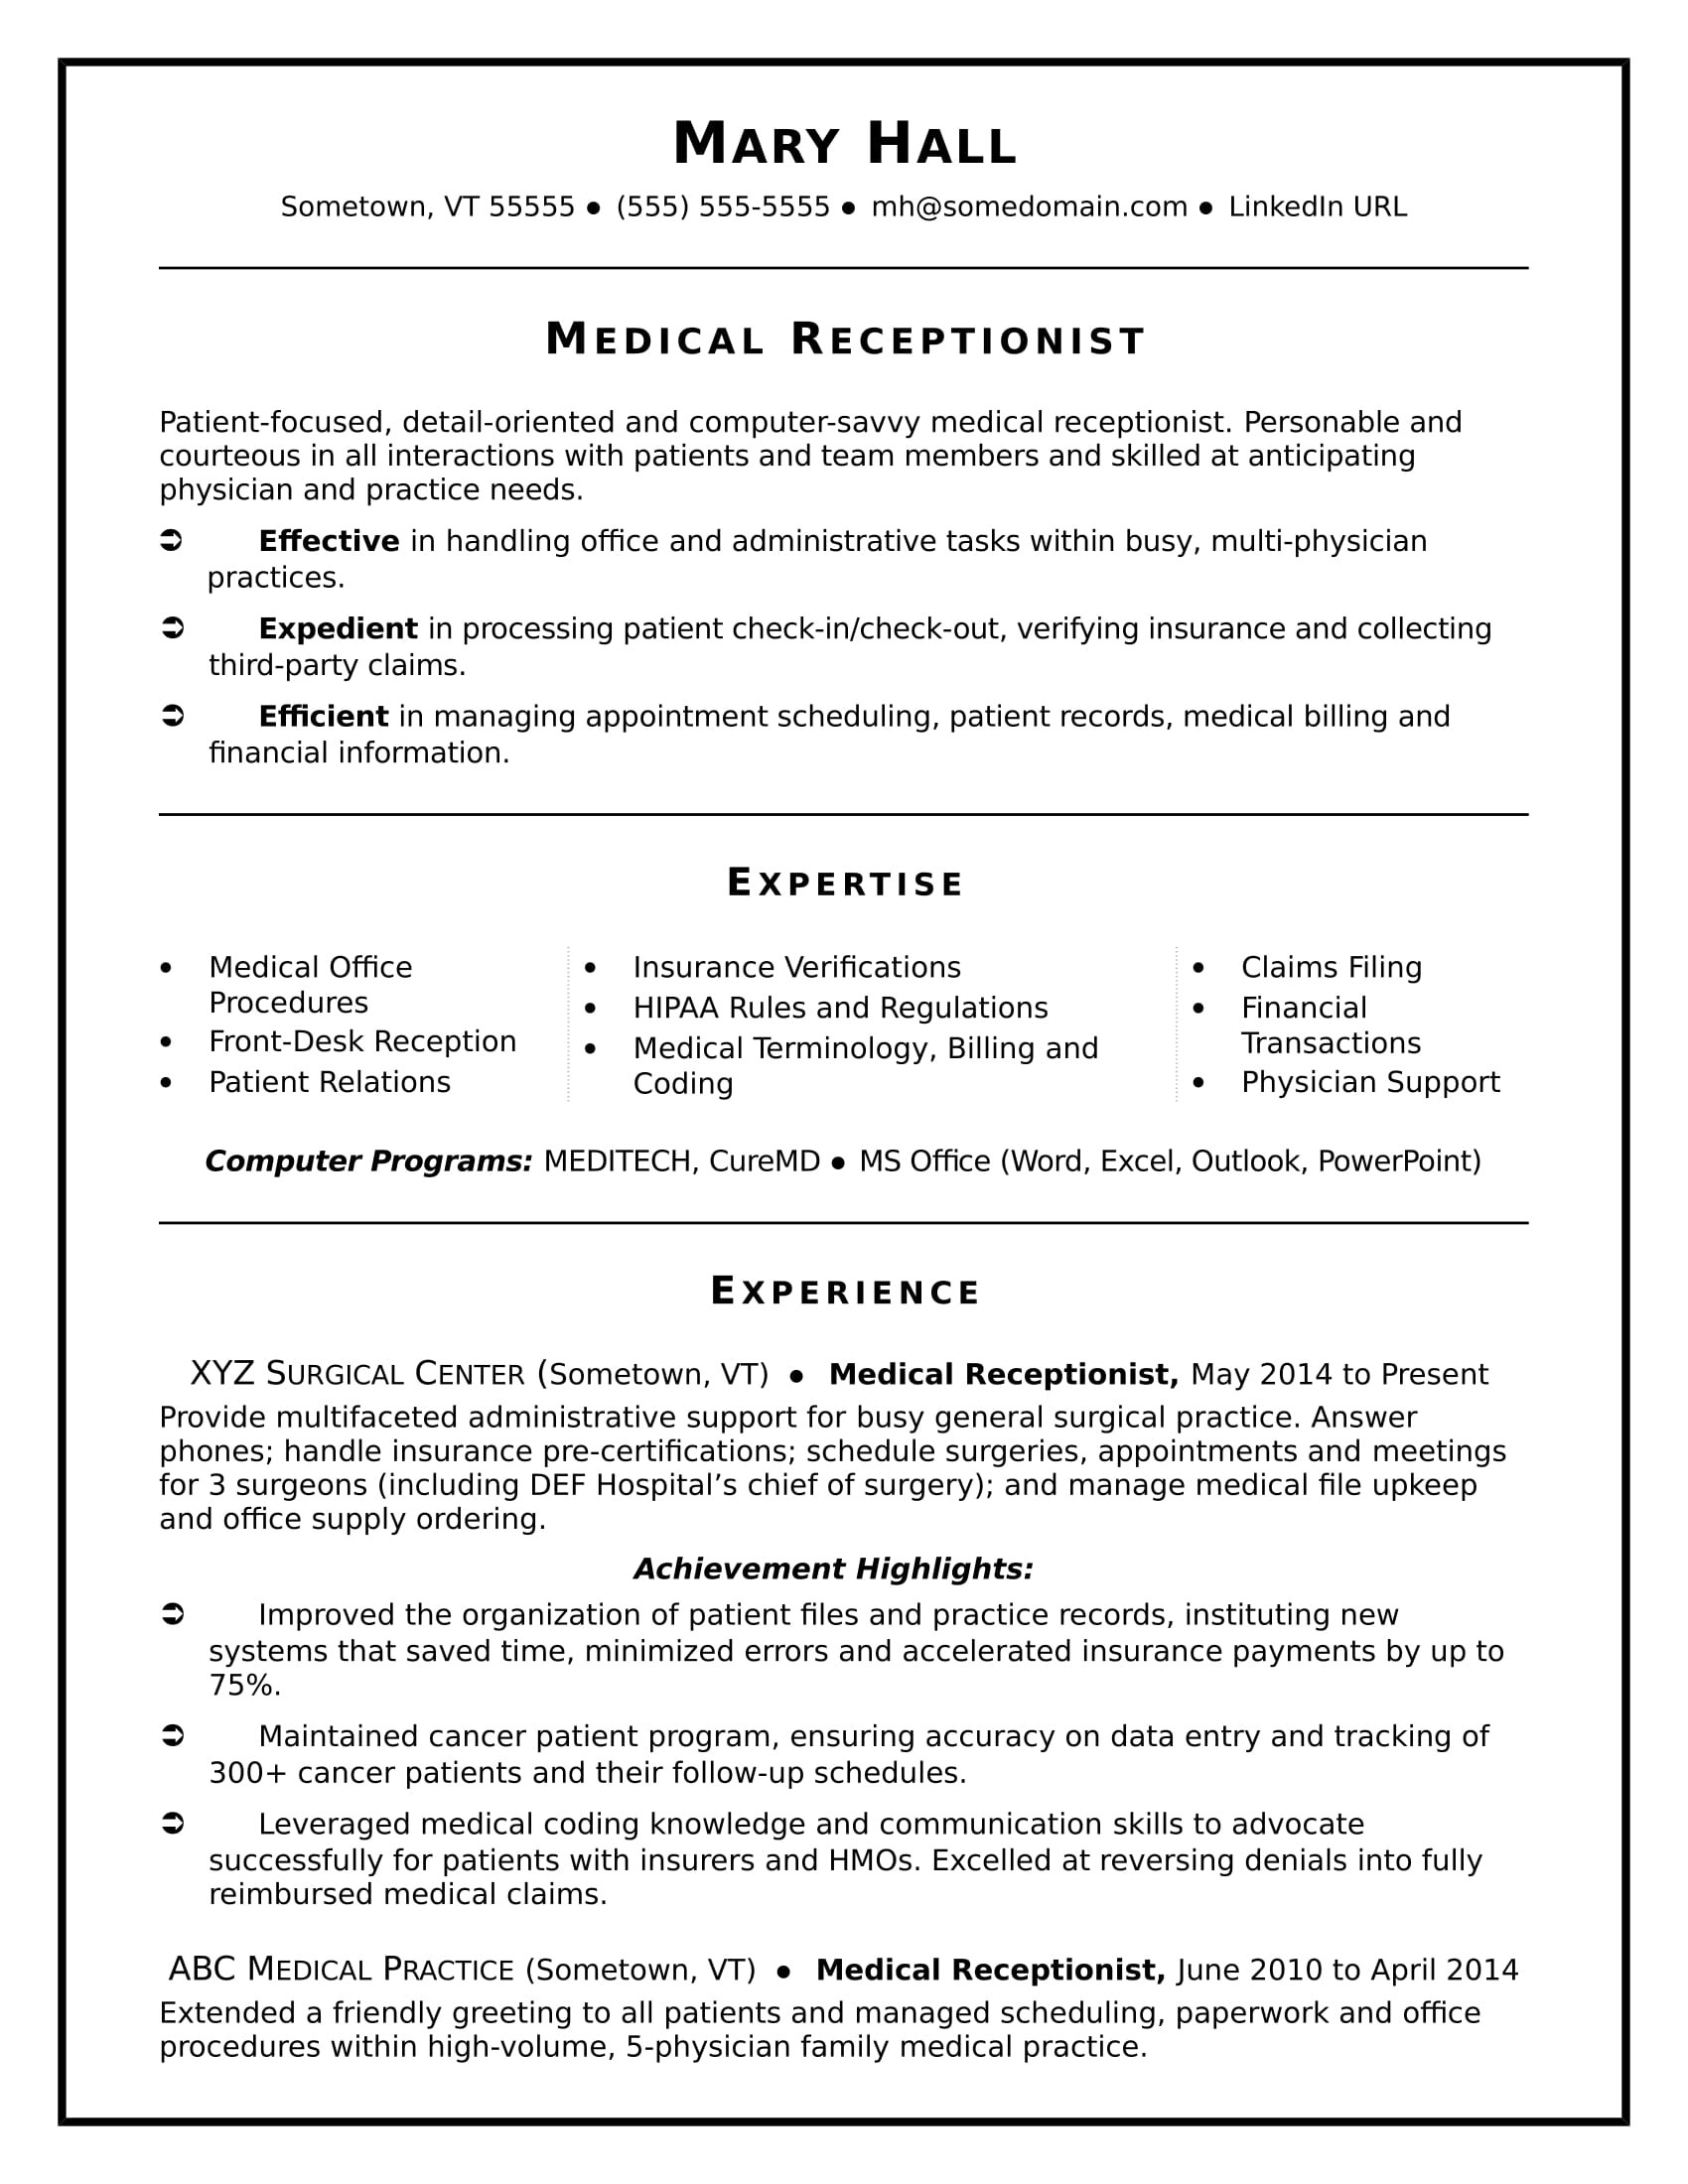 Resume Templates for Front Desk Receptionist Medical Receptionist Resume Sample Monster.com